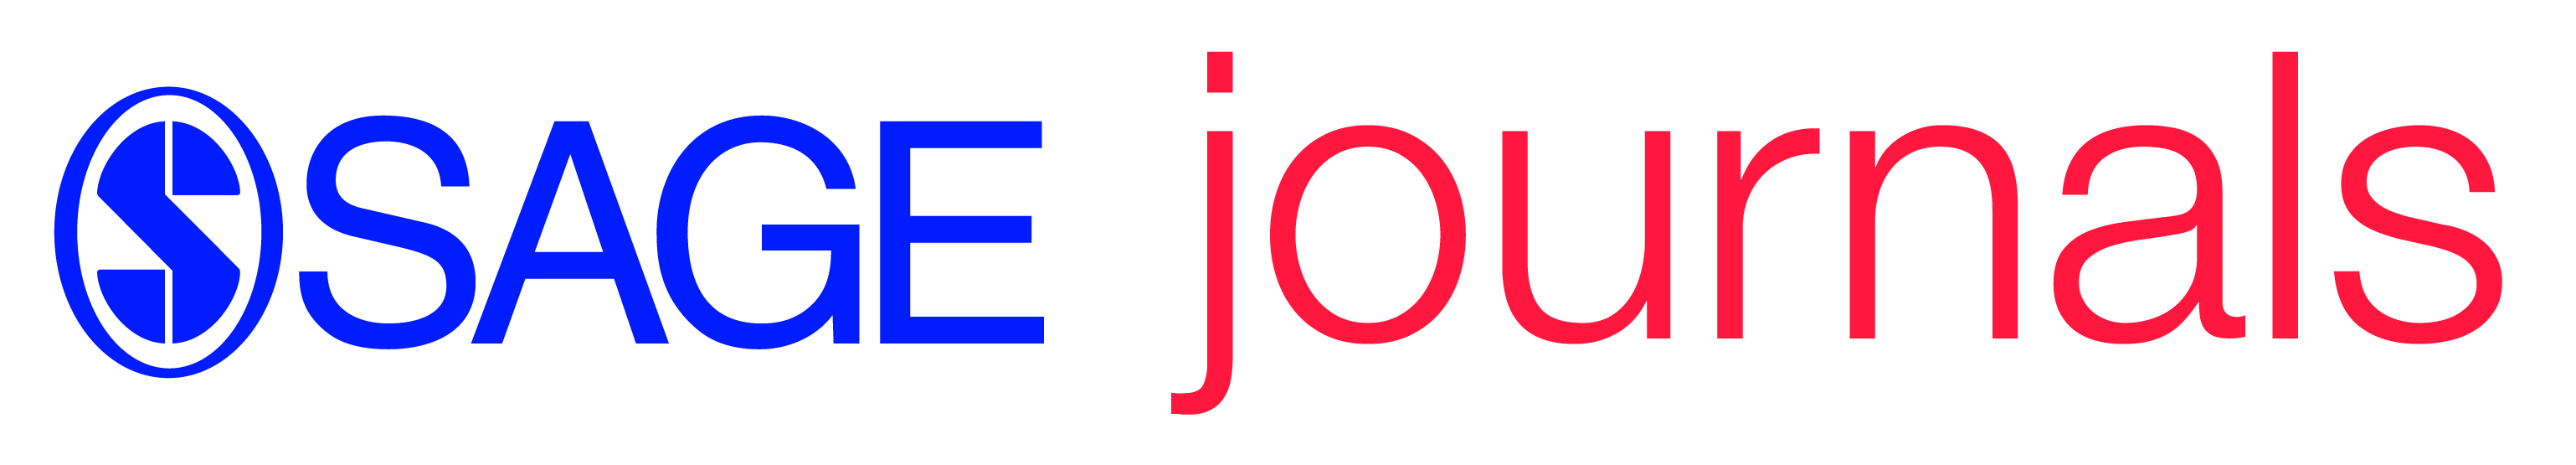 SAGE Journals logo